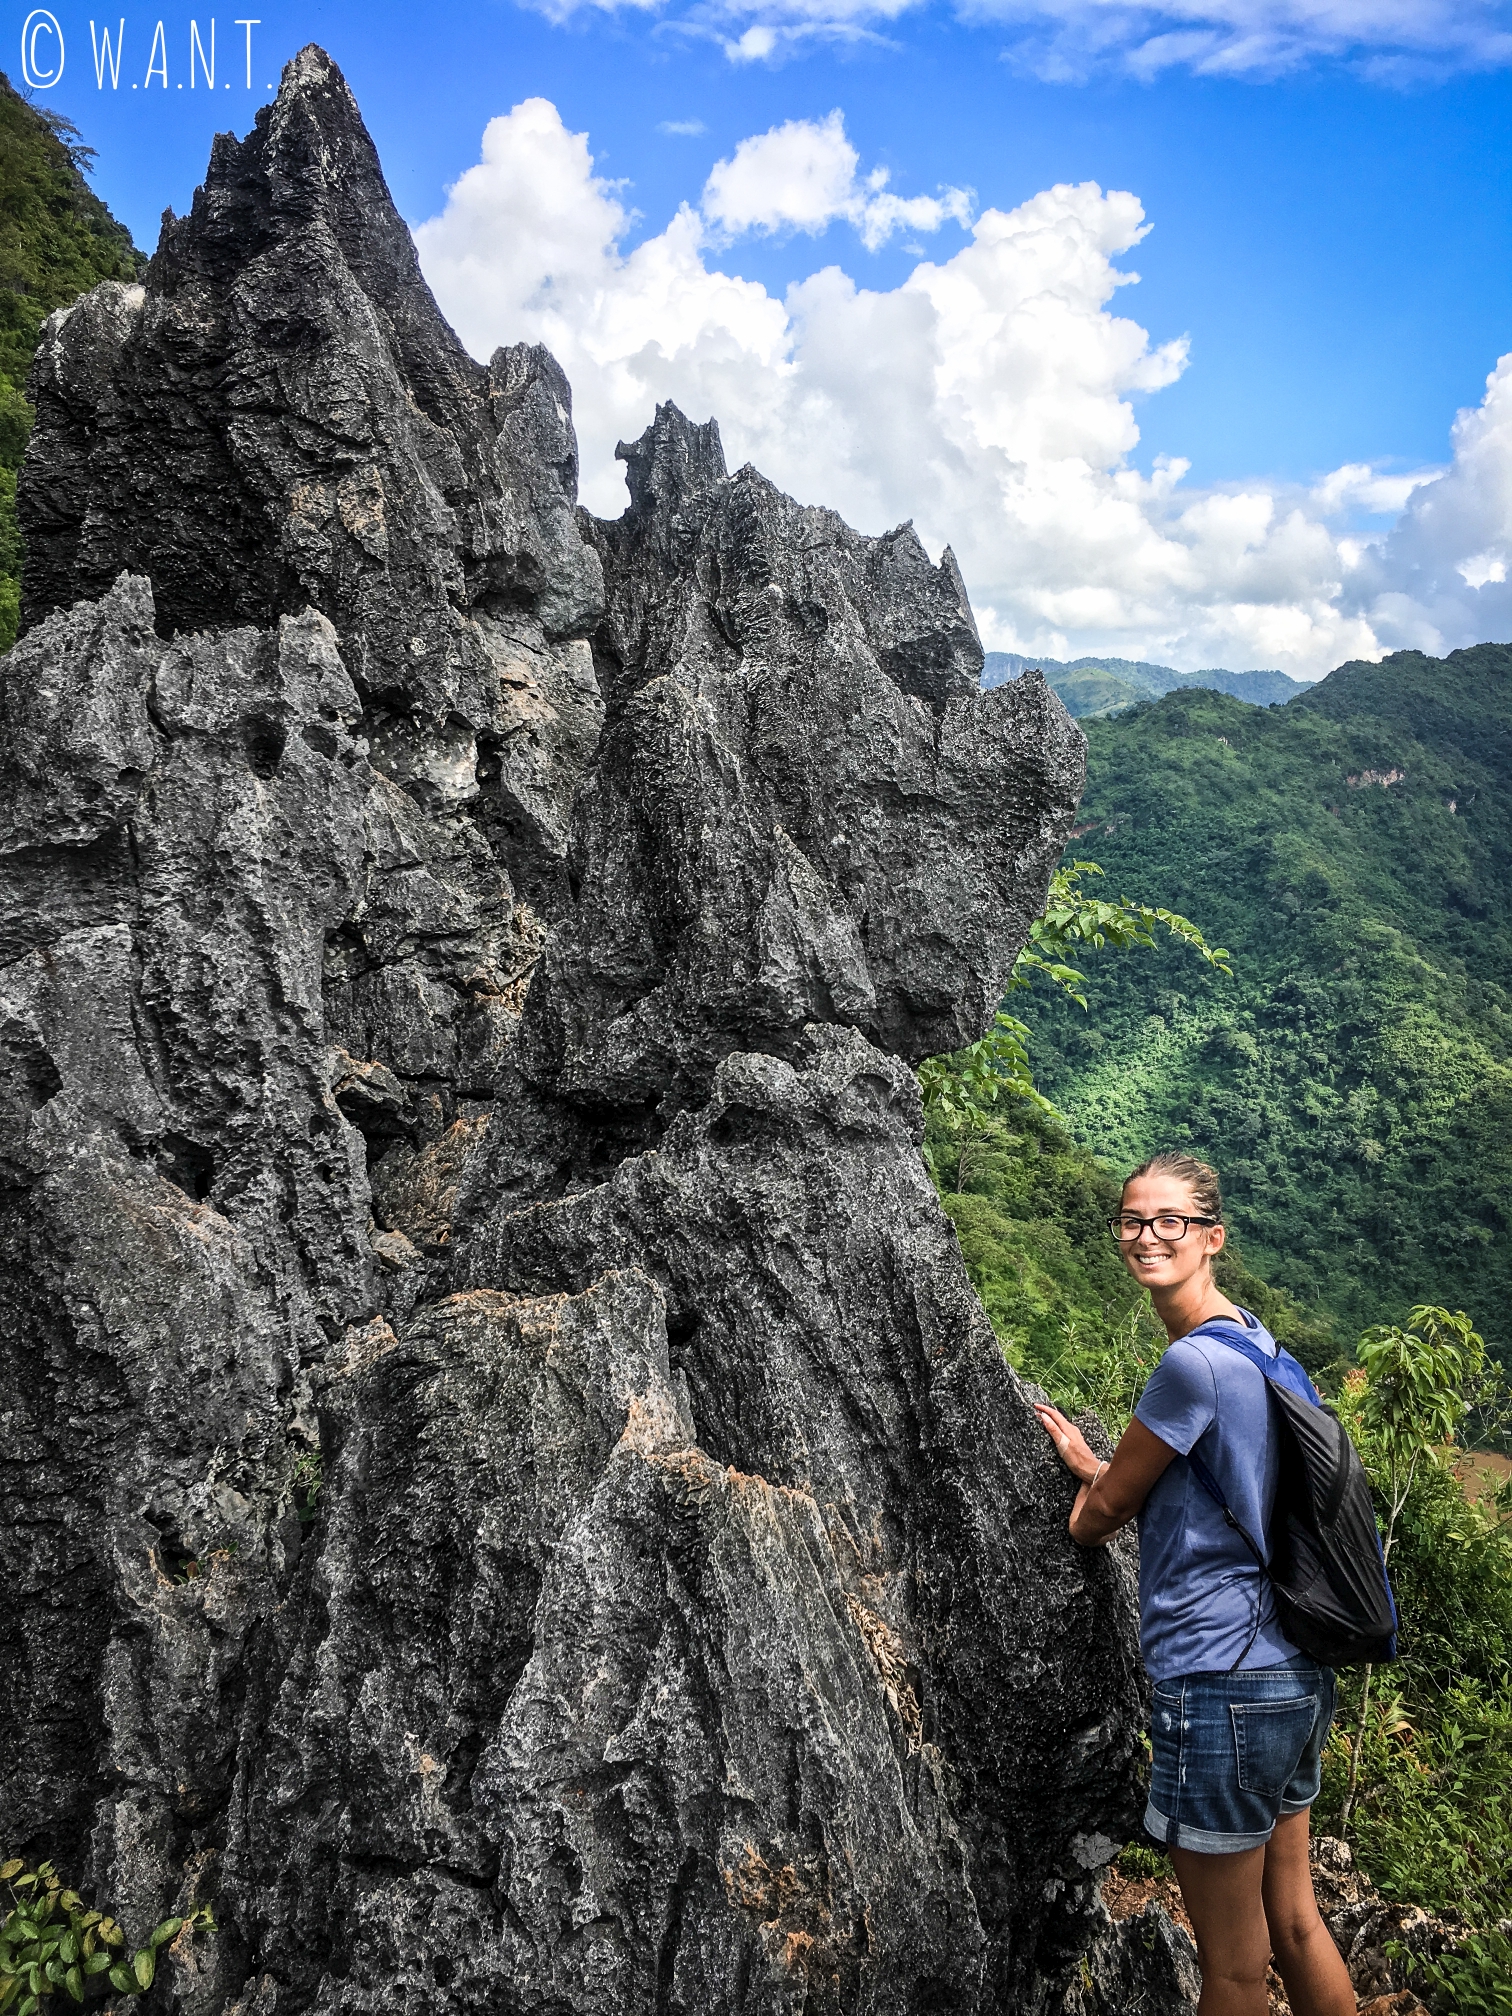 L'accès au point de vue Nang None de Nong Khiaw se fait en escaladant de la roche